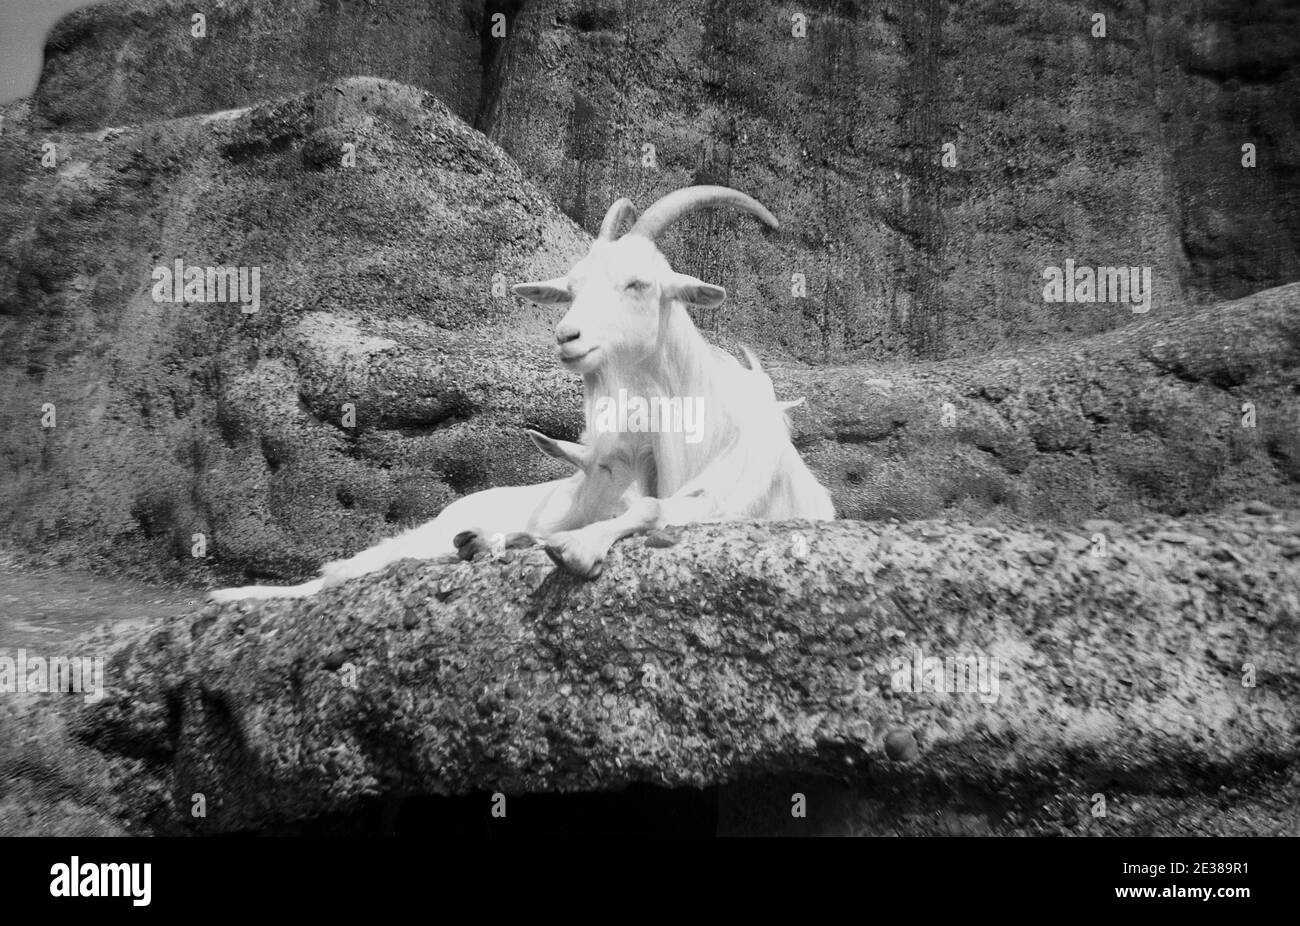 Chèvre des rocheuses Banque d'images noir et blanc - Alamy